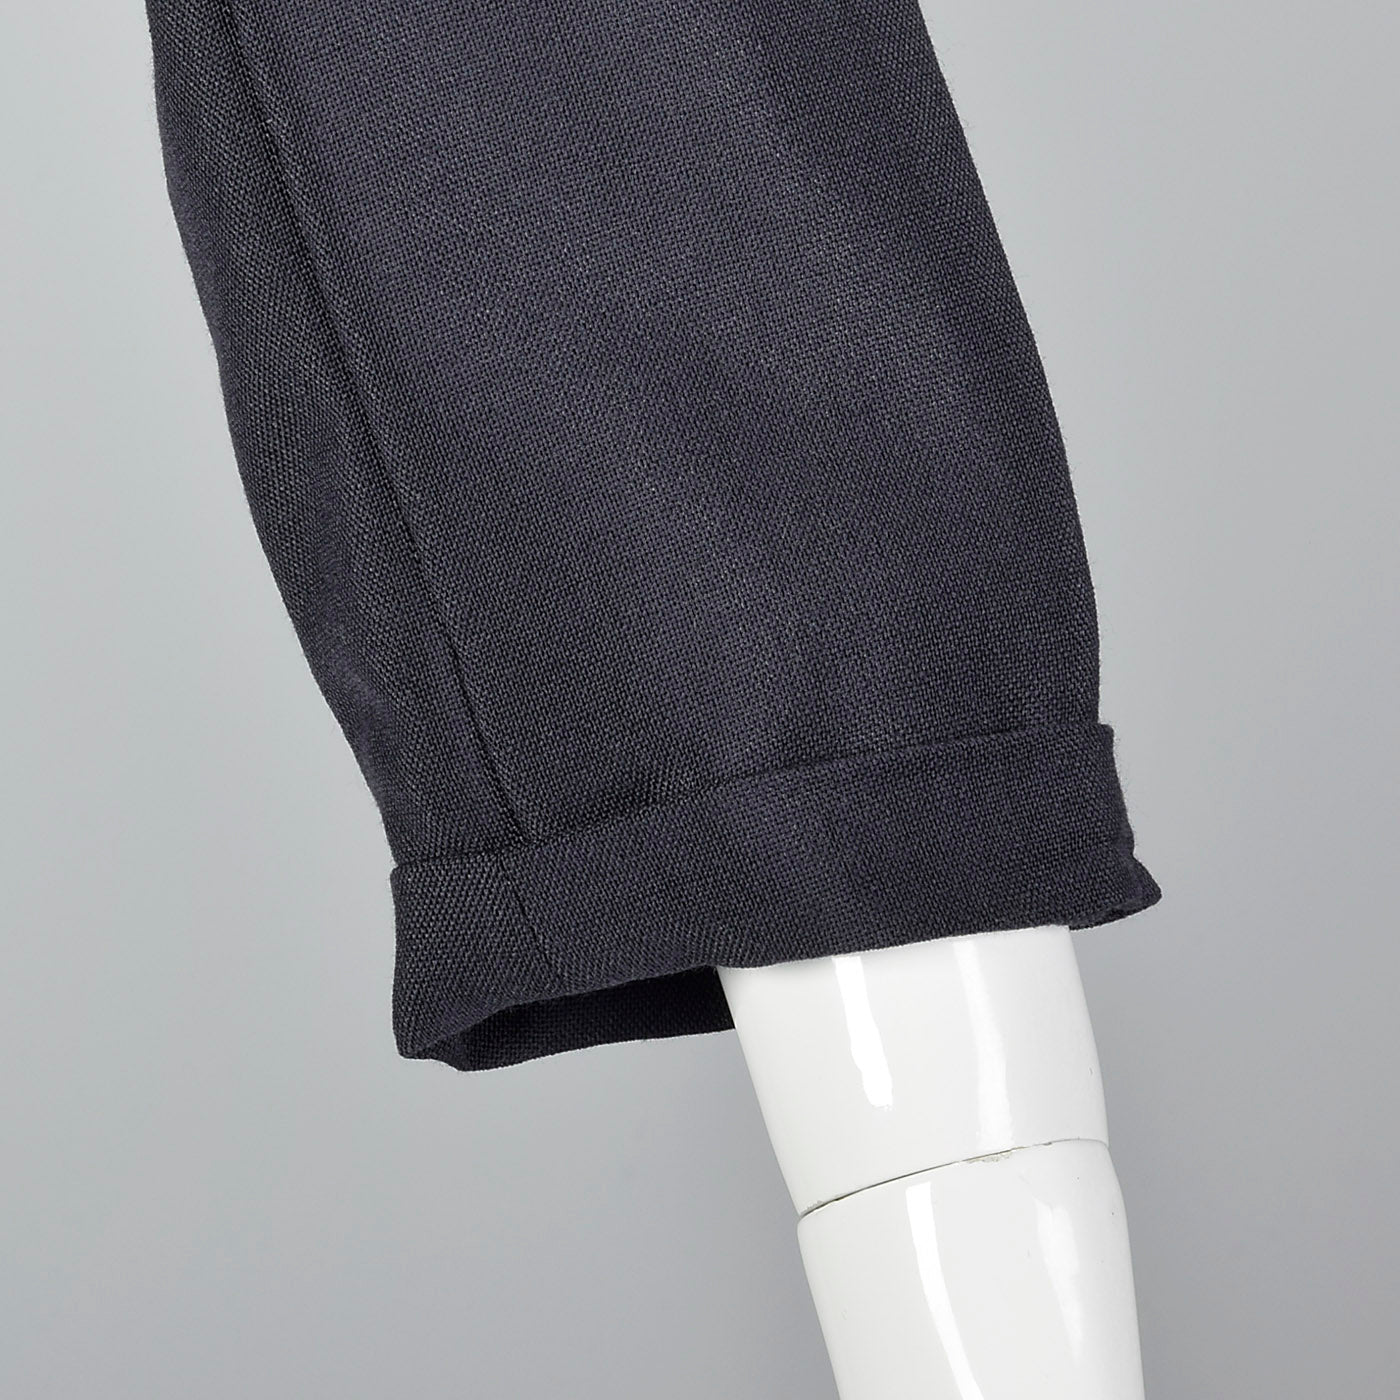 2000s Classic Jil Sander Black Skirt Suit